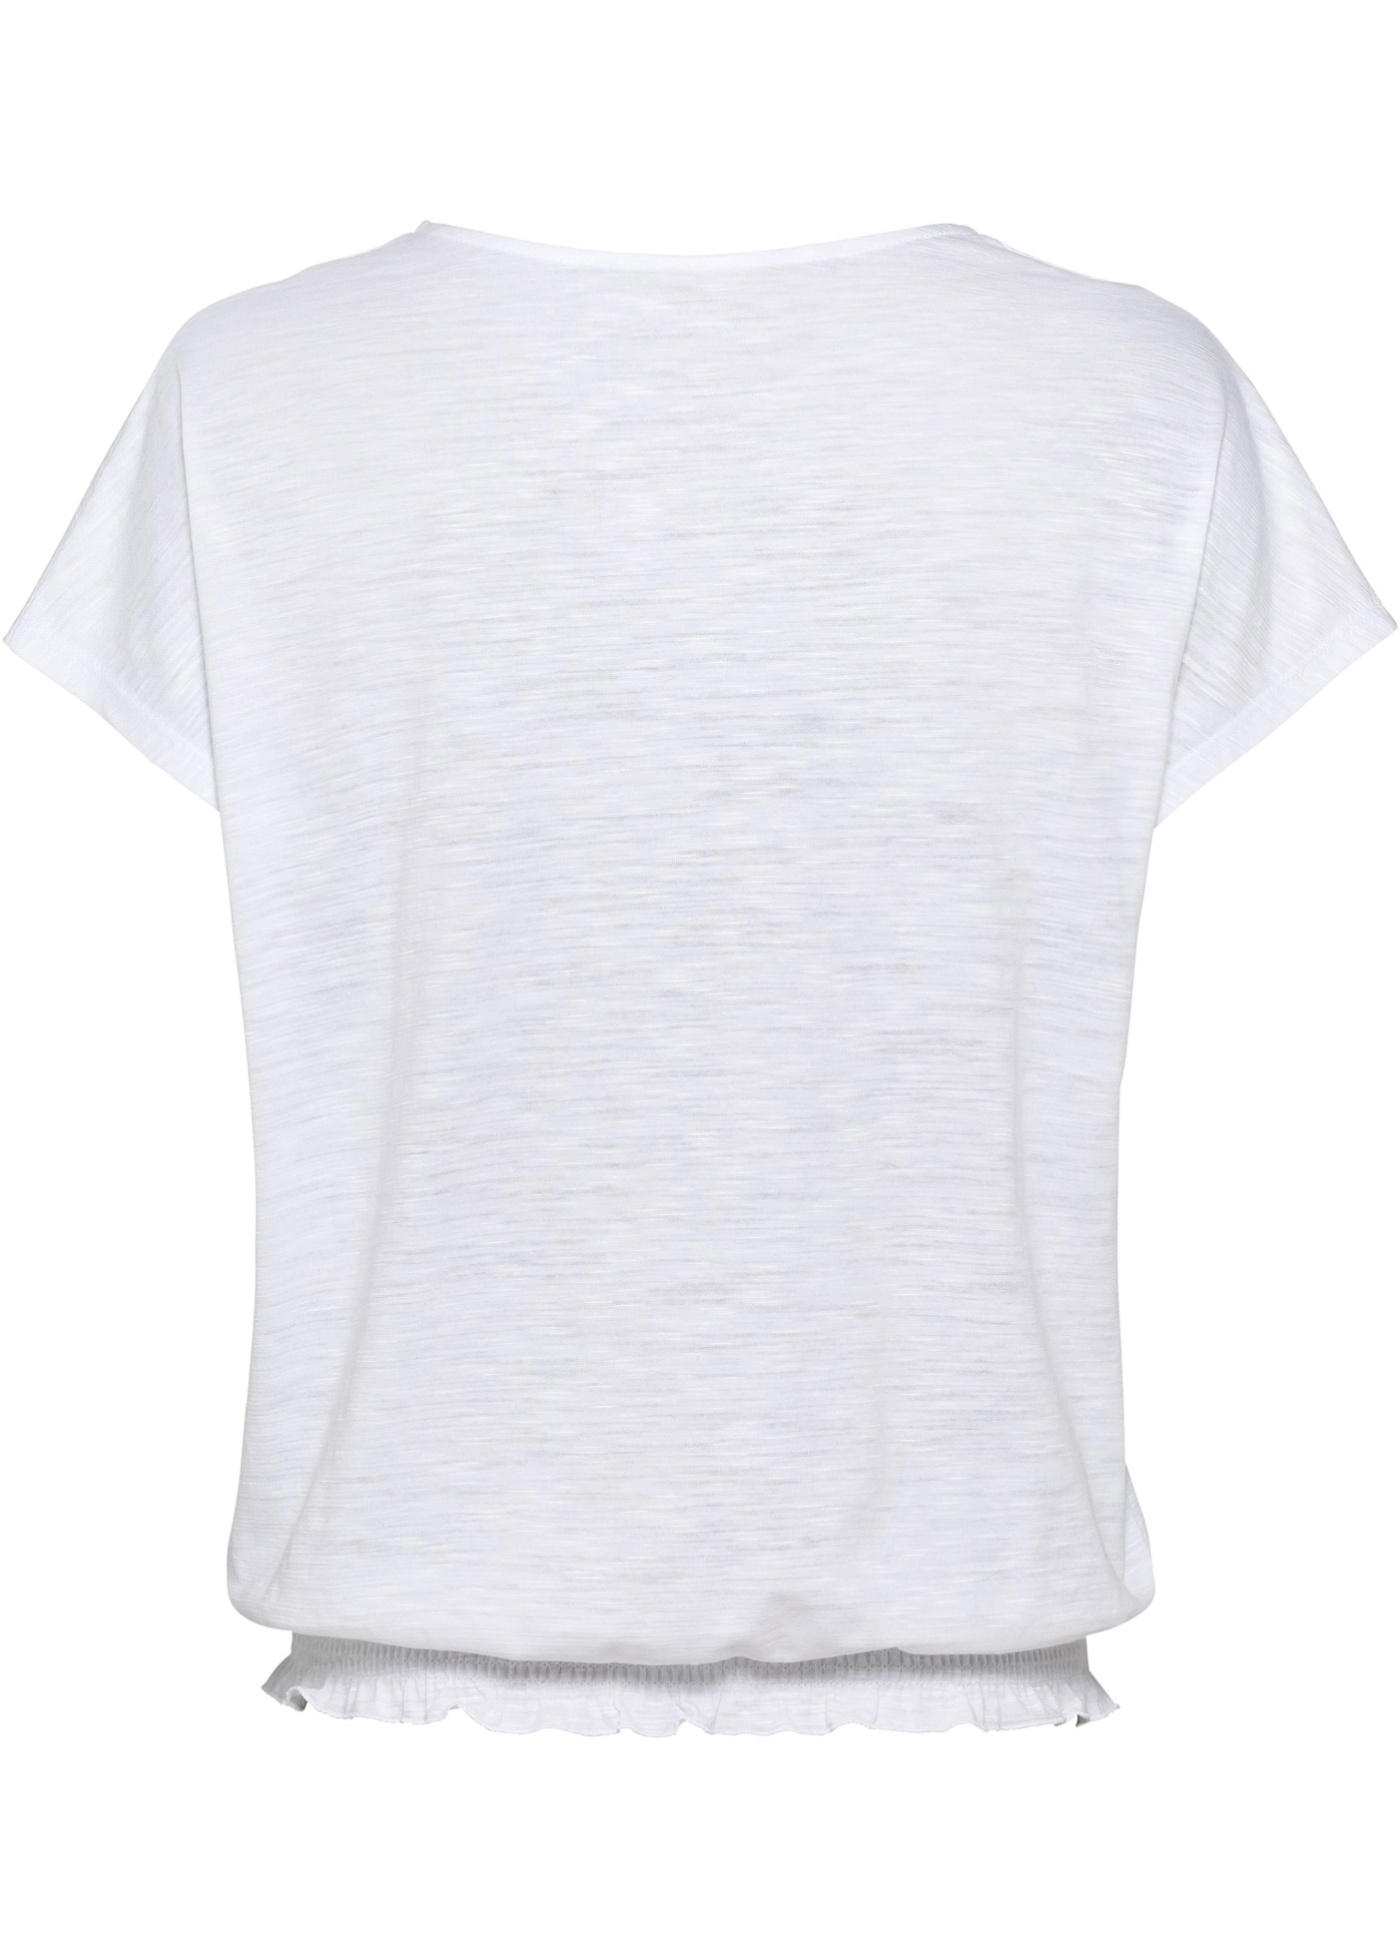 Luftiges Shirt mit elastischem Bund am Saum. (94015195) in weiß